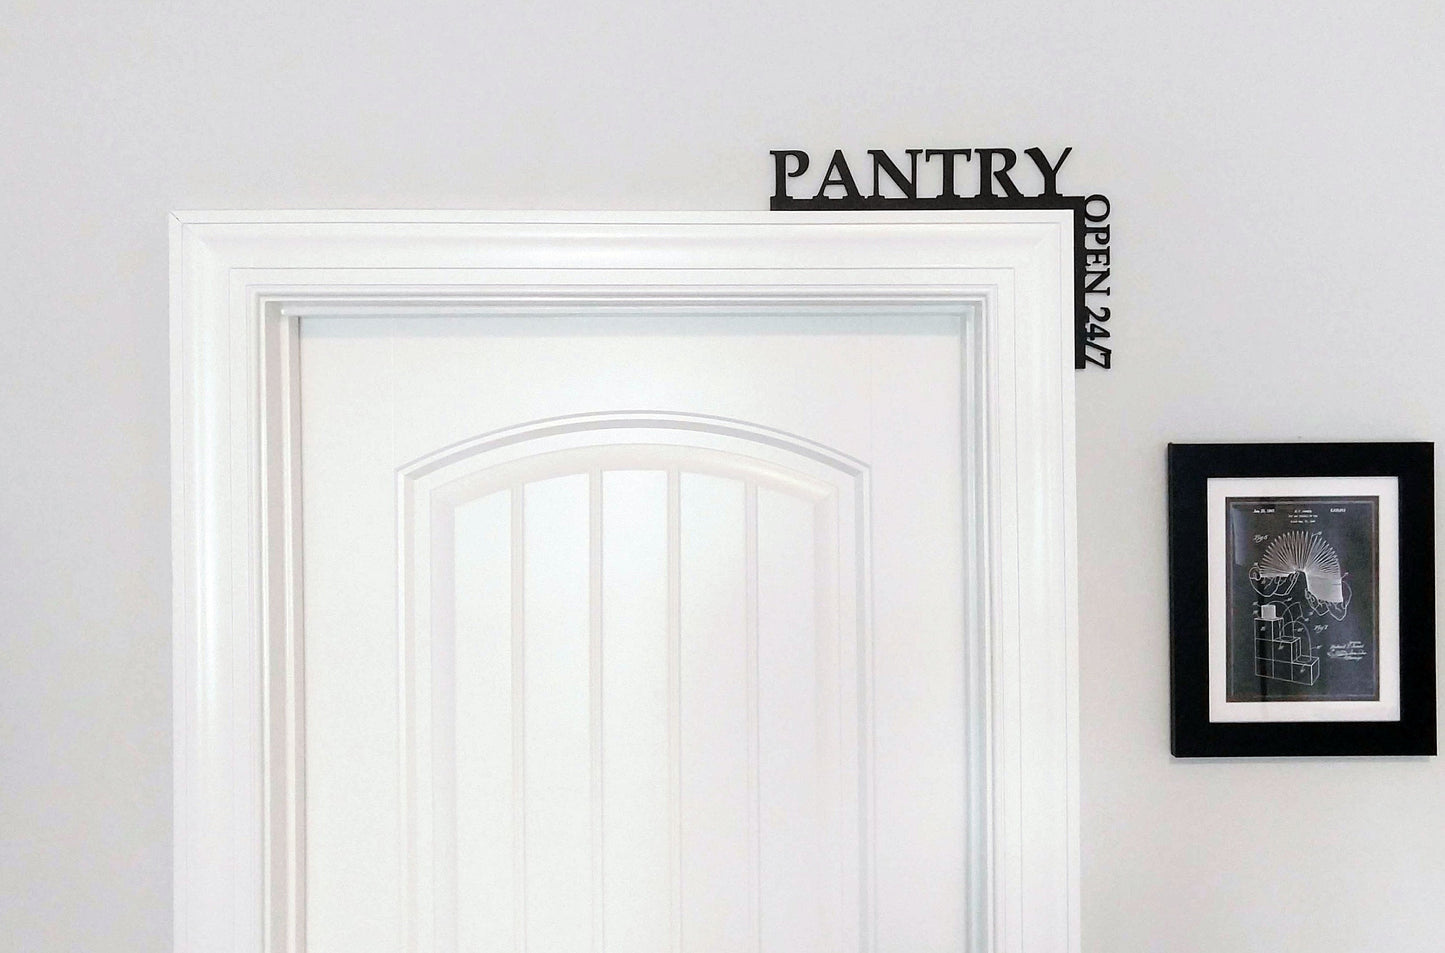 Pantry Open 24/7 "Over the Door" Door Topper Sign